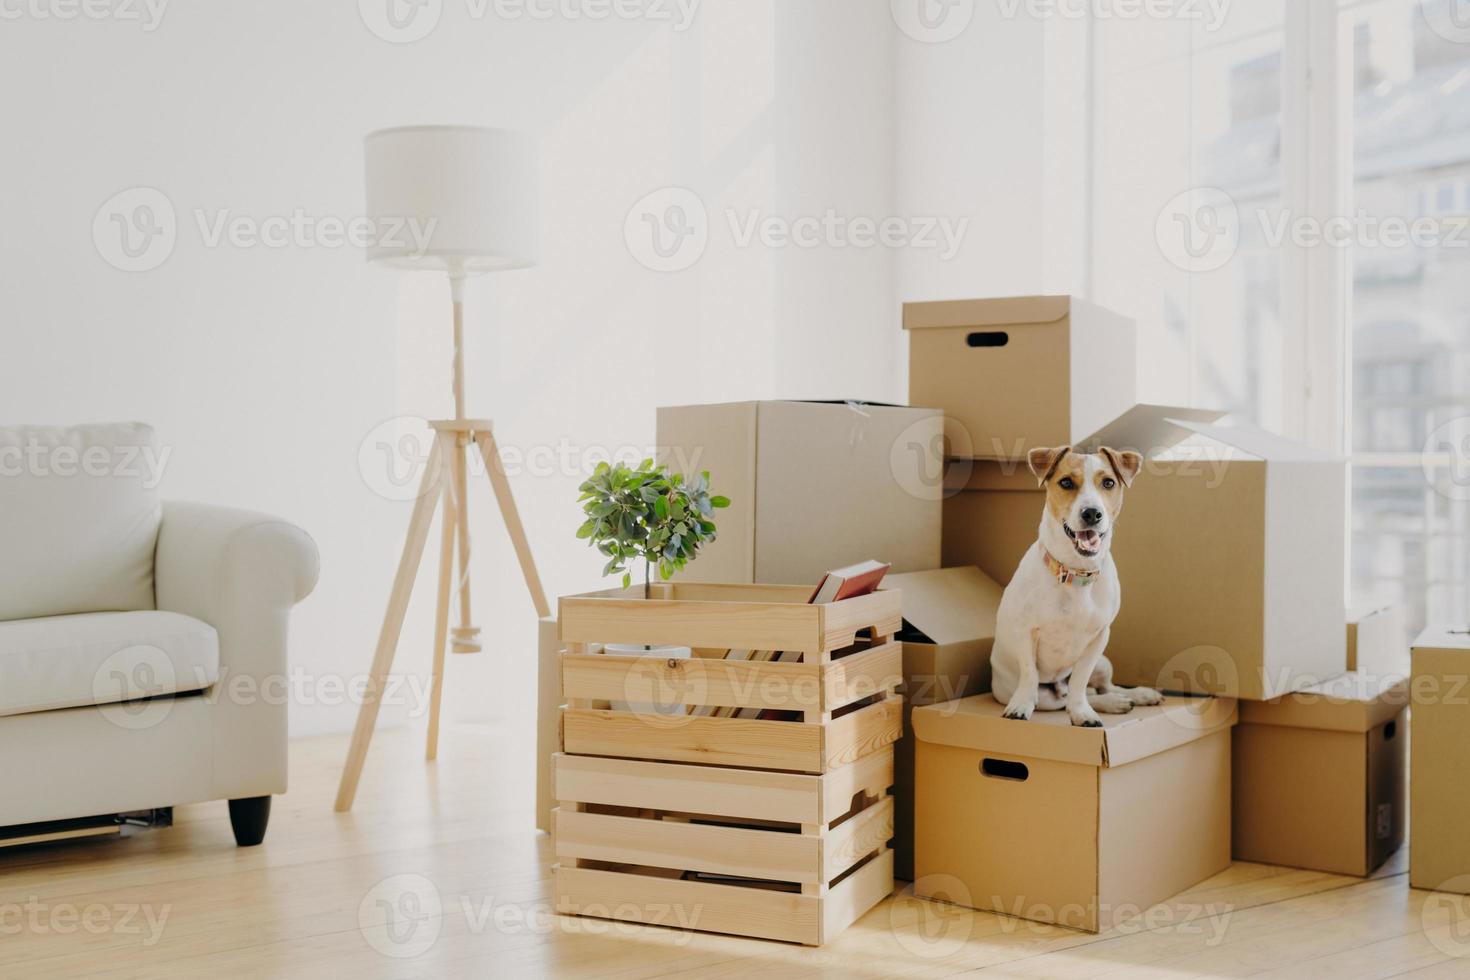 foto van stamboom schattige hond poses op stapel kartonnen dozen met eigendommen van de eigenaar, verhuizen in nieuwe flat, lege kamer met witte muren, lamp en bank, groot raam. dieren en bewegende dag concept